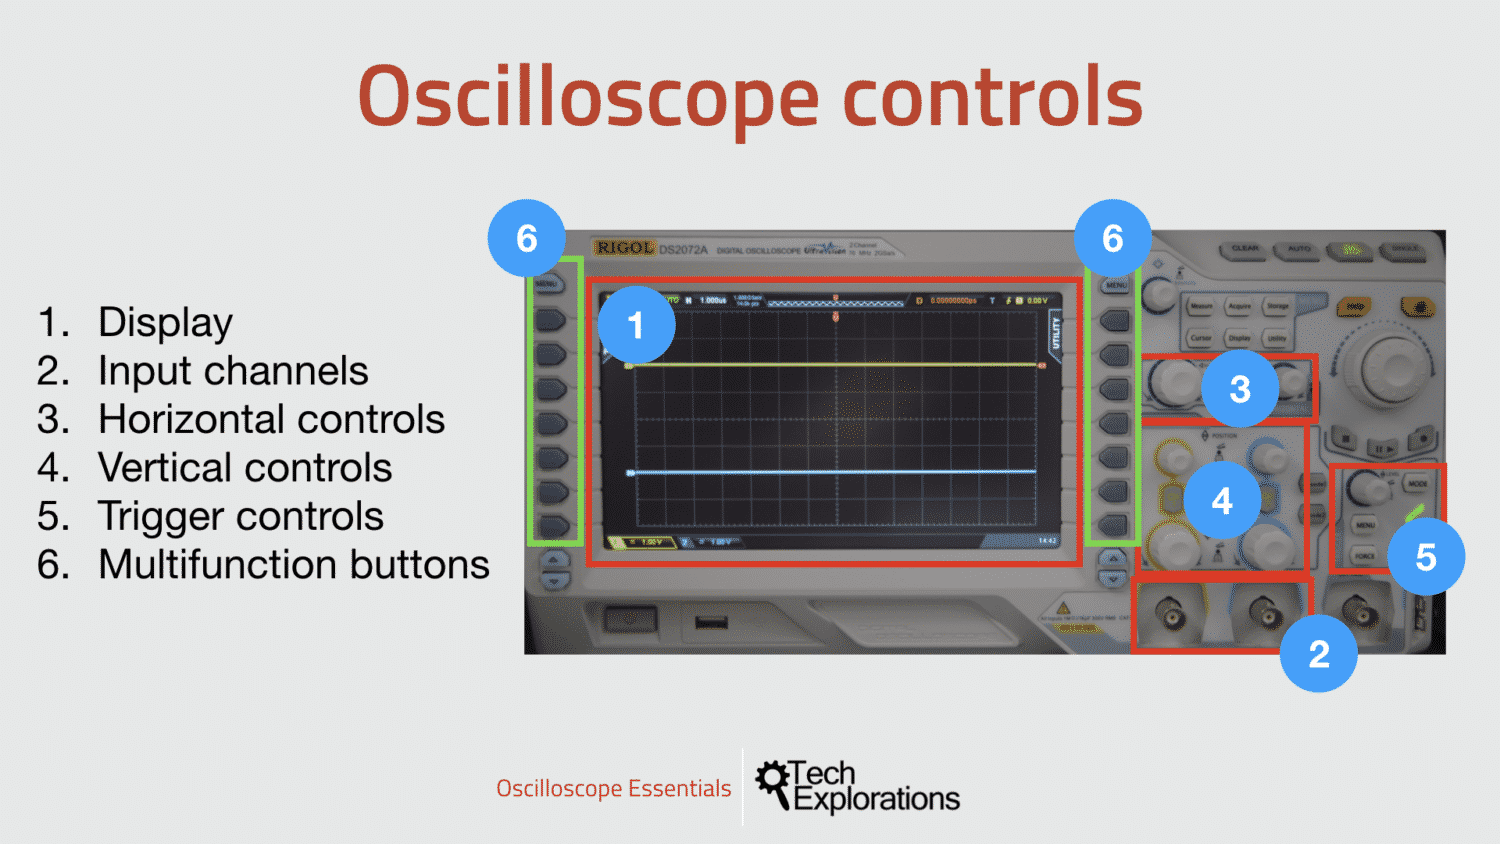 Basics of Oscilloscopes